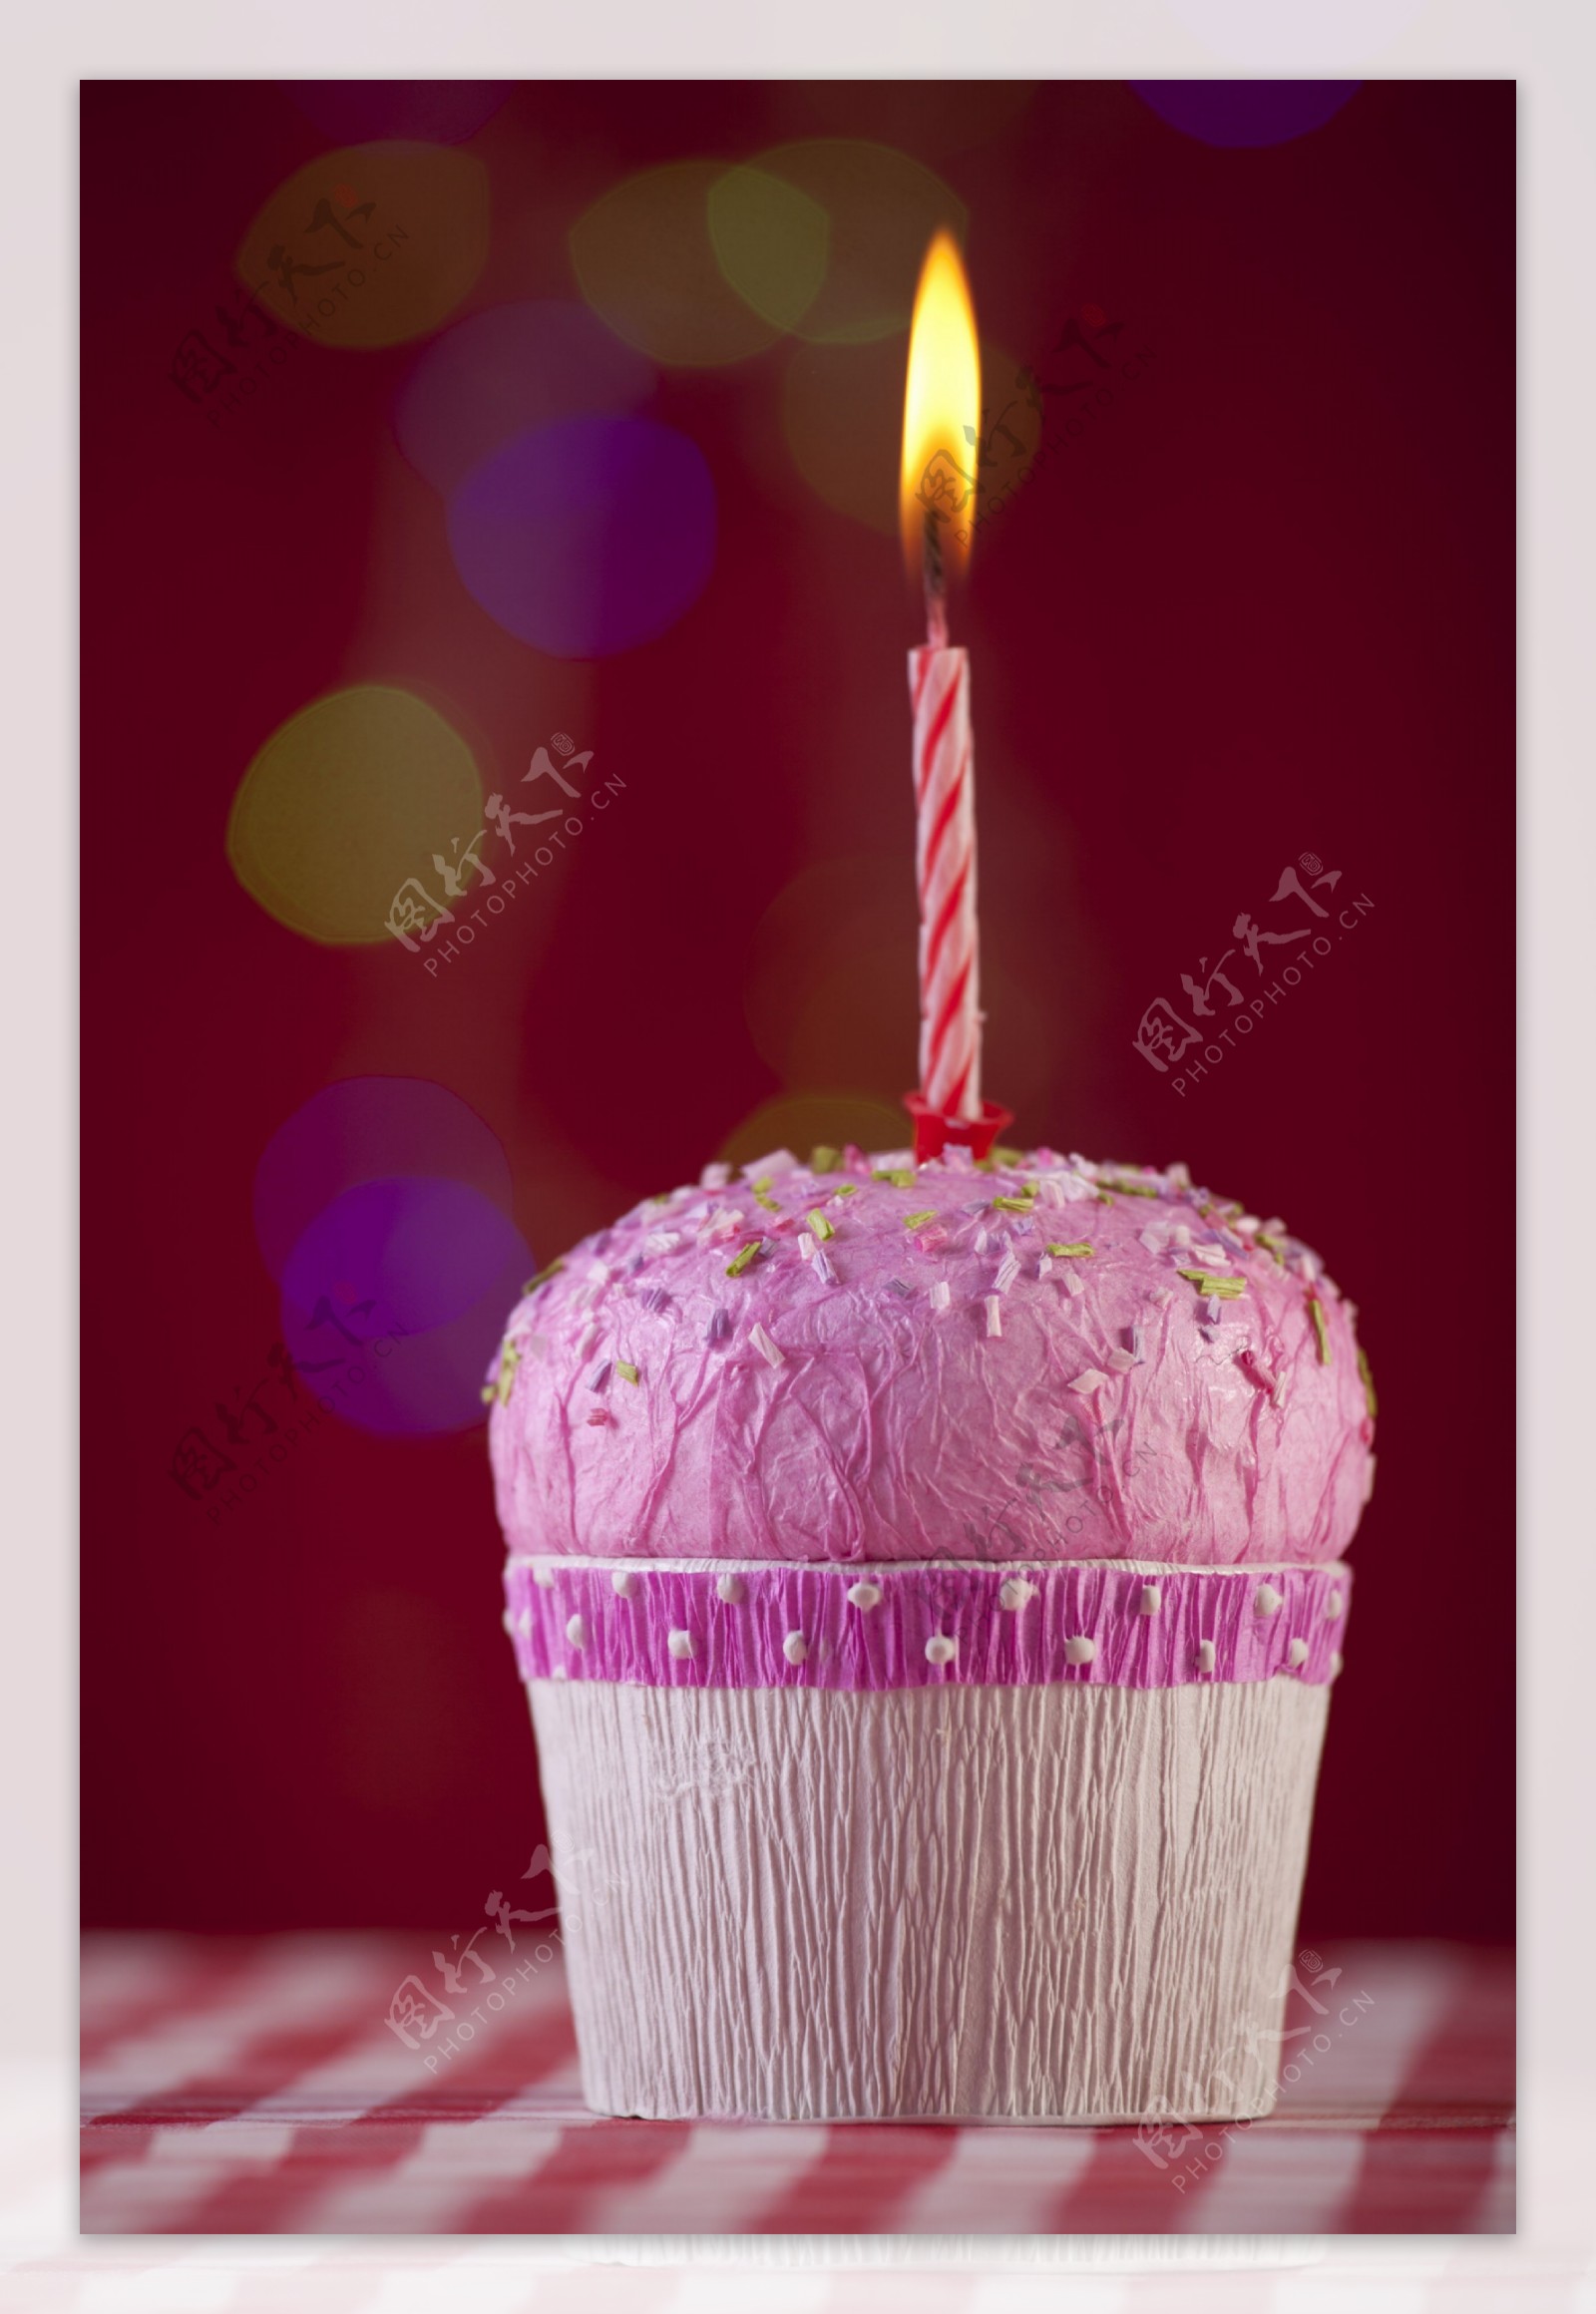 蛋糕蜡烛图片